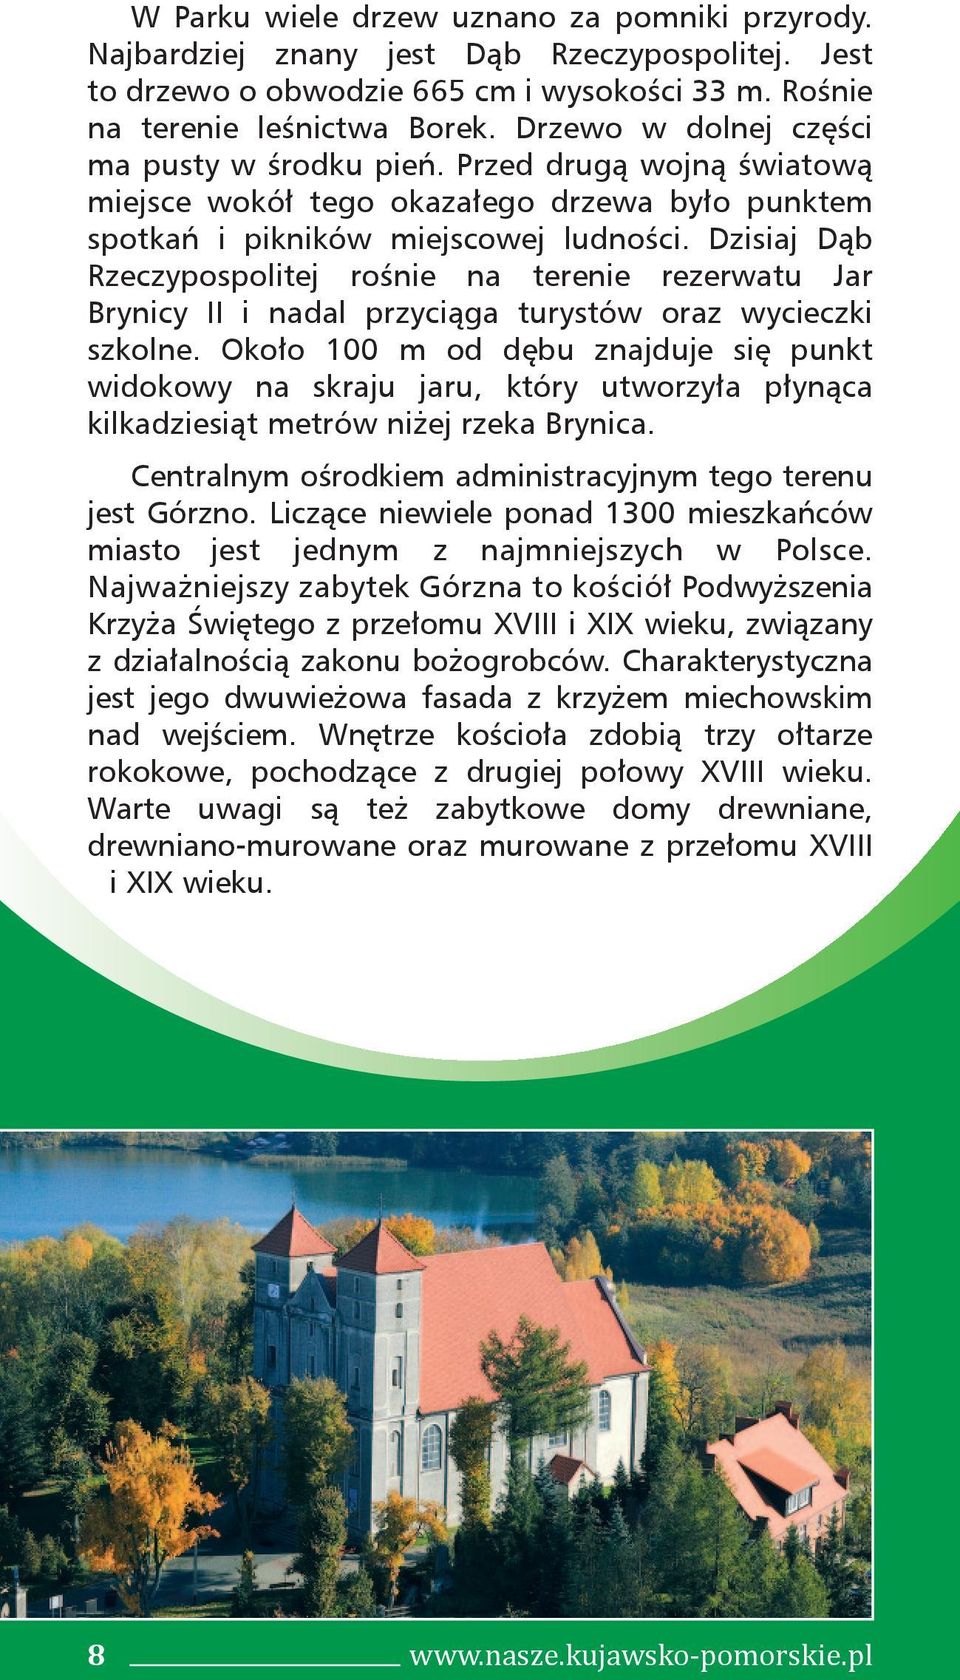 Dzisiaj Dąb Rzeczypospolitej rośnie na terenie rezerwatu Jar Brynicy II i nadal przyciąga turystów oraz wycieczki szkolne.